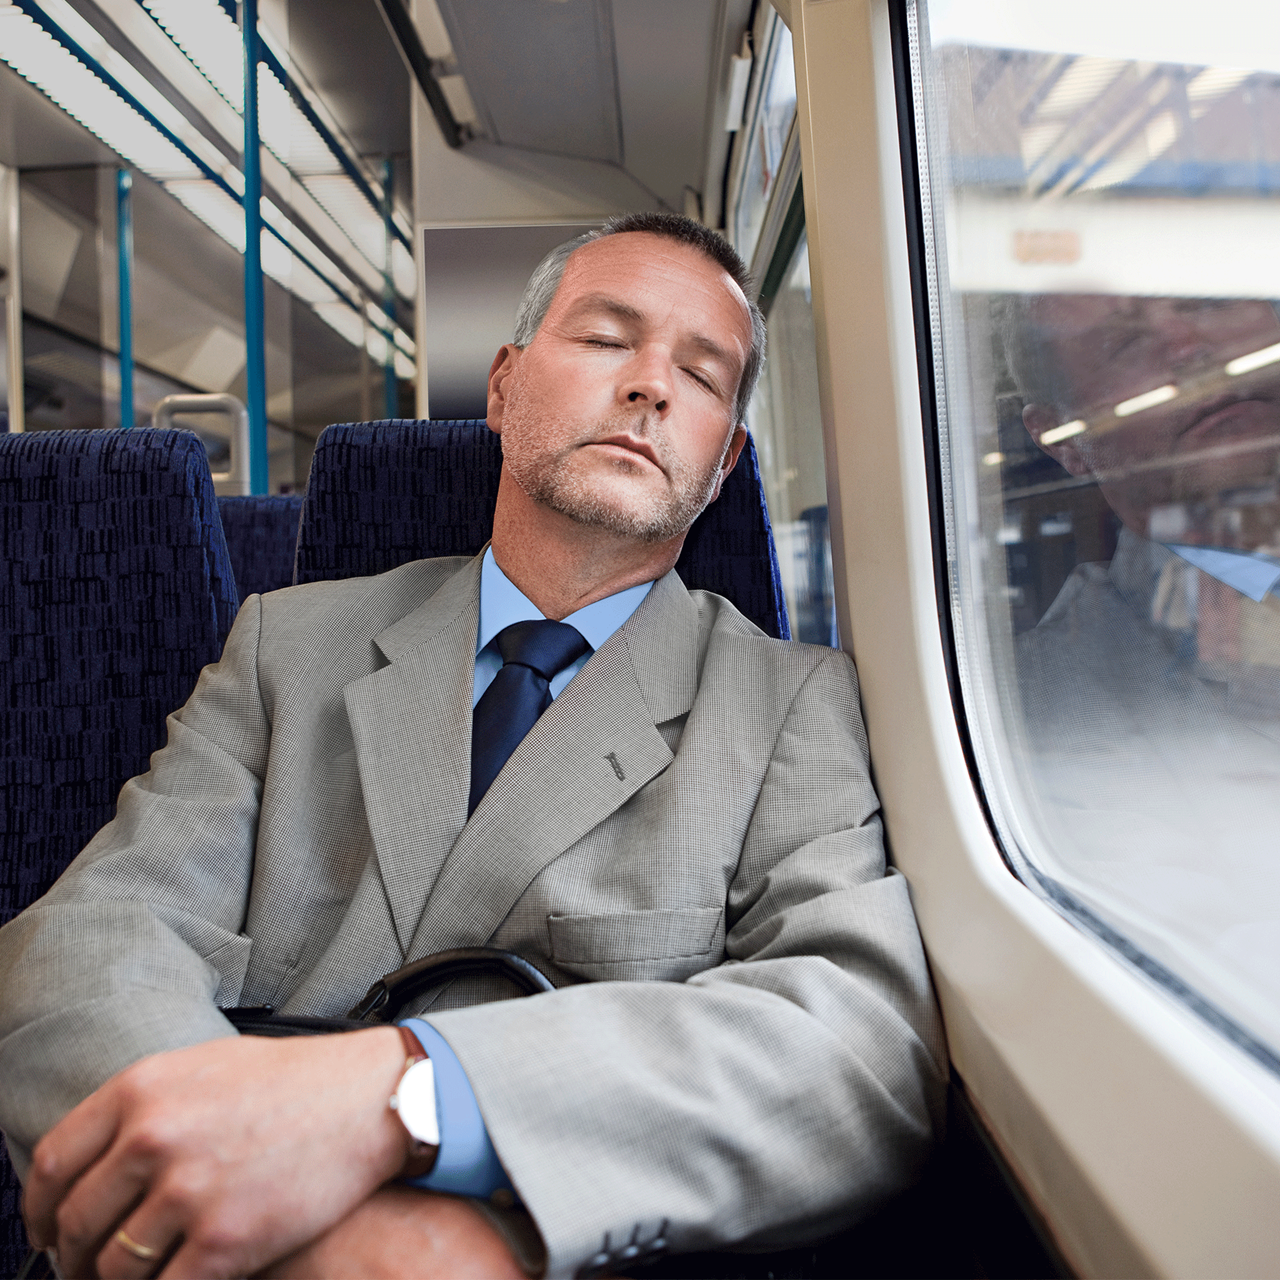 Mann im Anzug sitzend im Zug und am schlafen